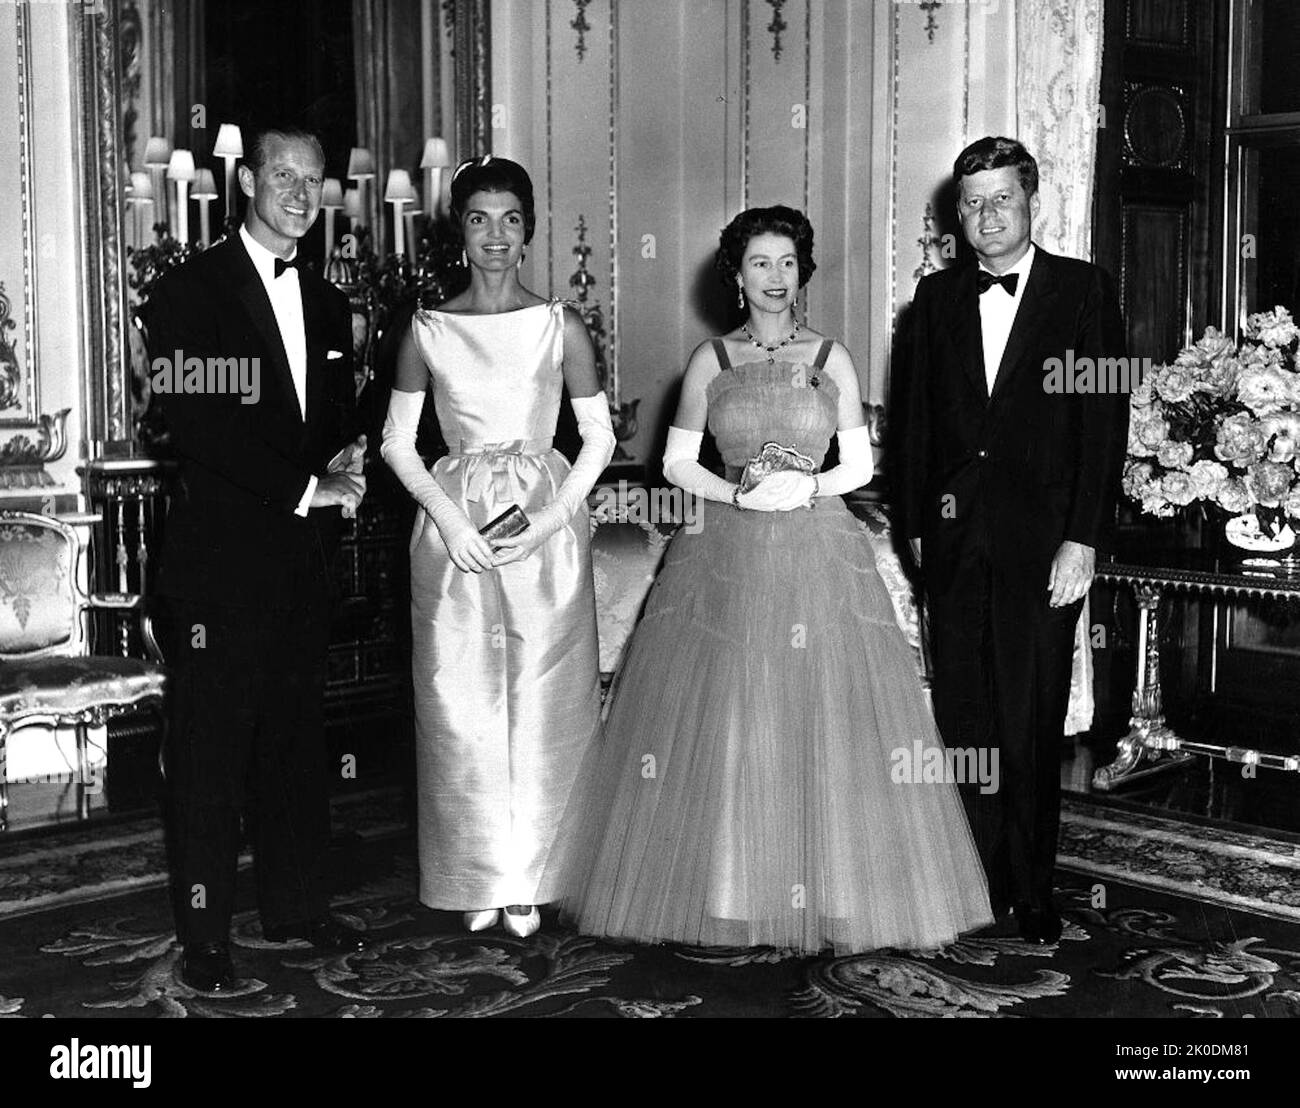 PX 96-33:17 05 Giugno 1961 Buckingham Palace la Regina Elisabetta e il Principe Filippo ospitano la cena della Regina per il Presidente e la Signora Kennedy. Dipartimento degli Stati Uniti o Foto Stock